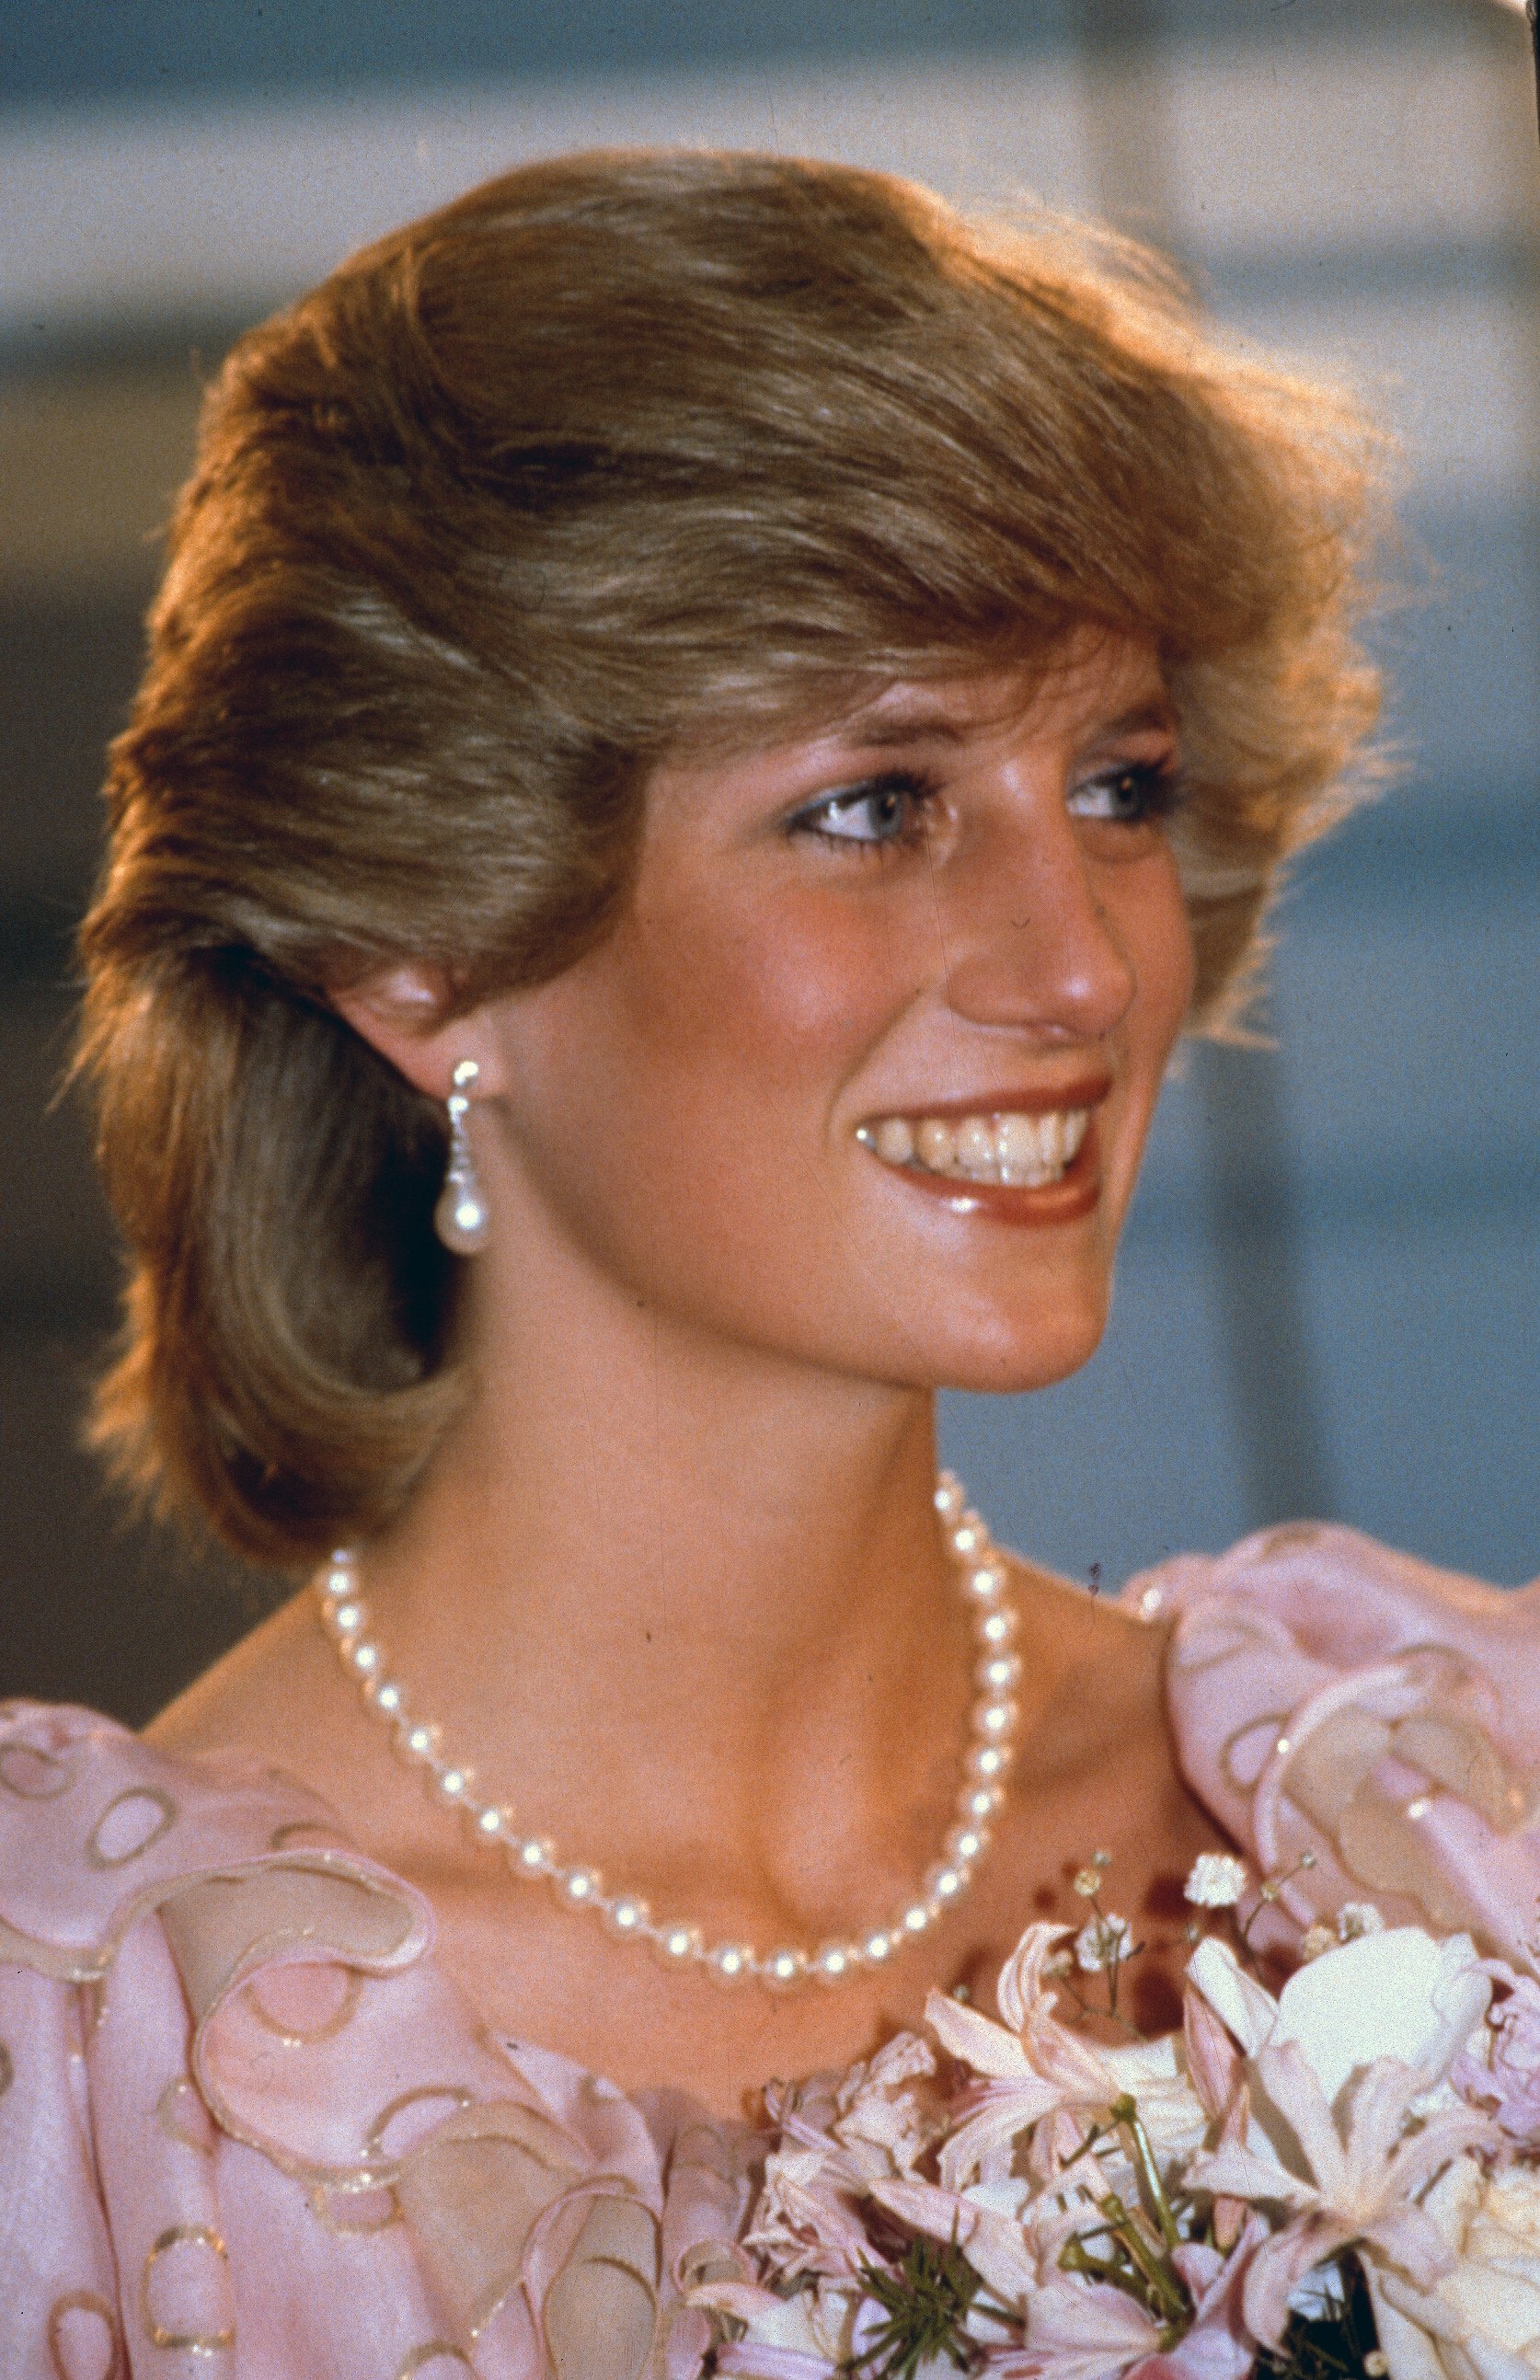 La princesse Diana assiste à un concert de gala au Melbourne Concert Hall, le 14 avril 1983 à Melbourne, Australie ┃Source : Getty Images